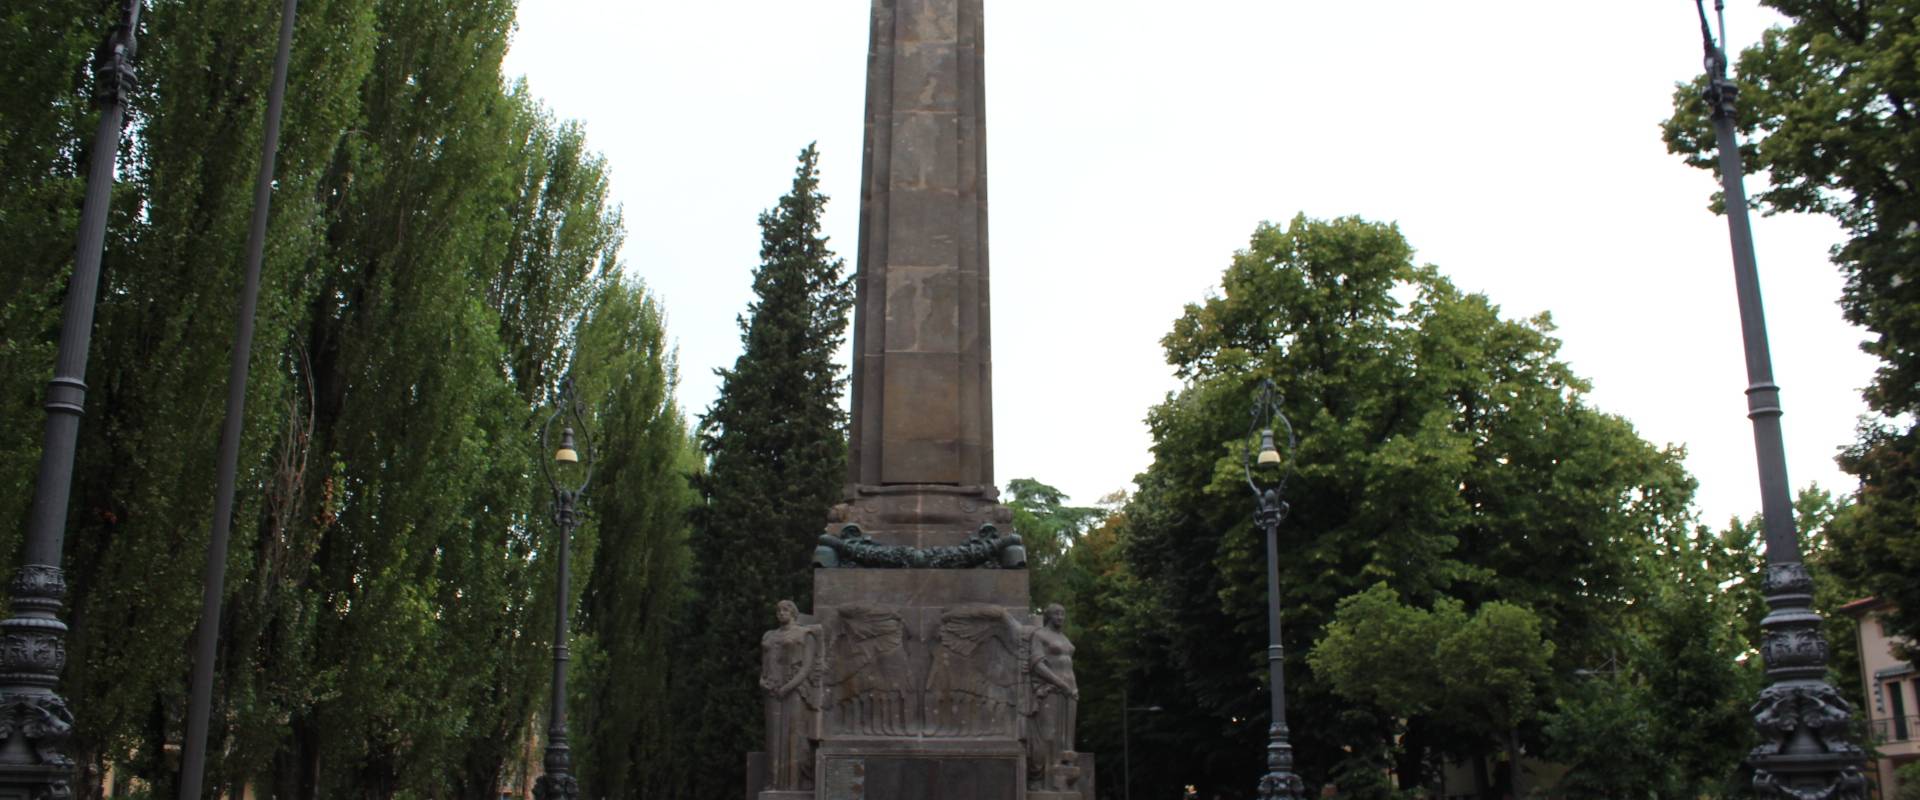 Monumento ai caduti della Prima guerra mondiale 12 foto di Dst81